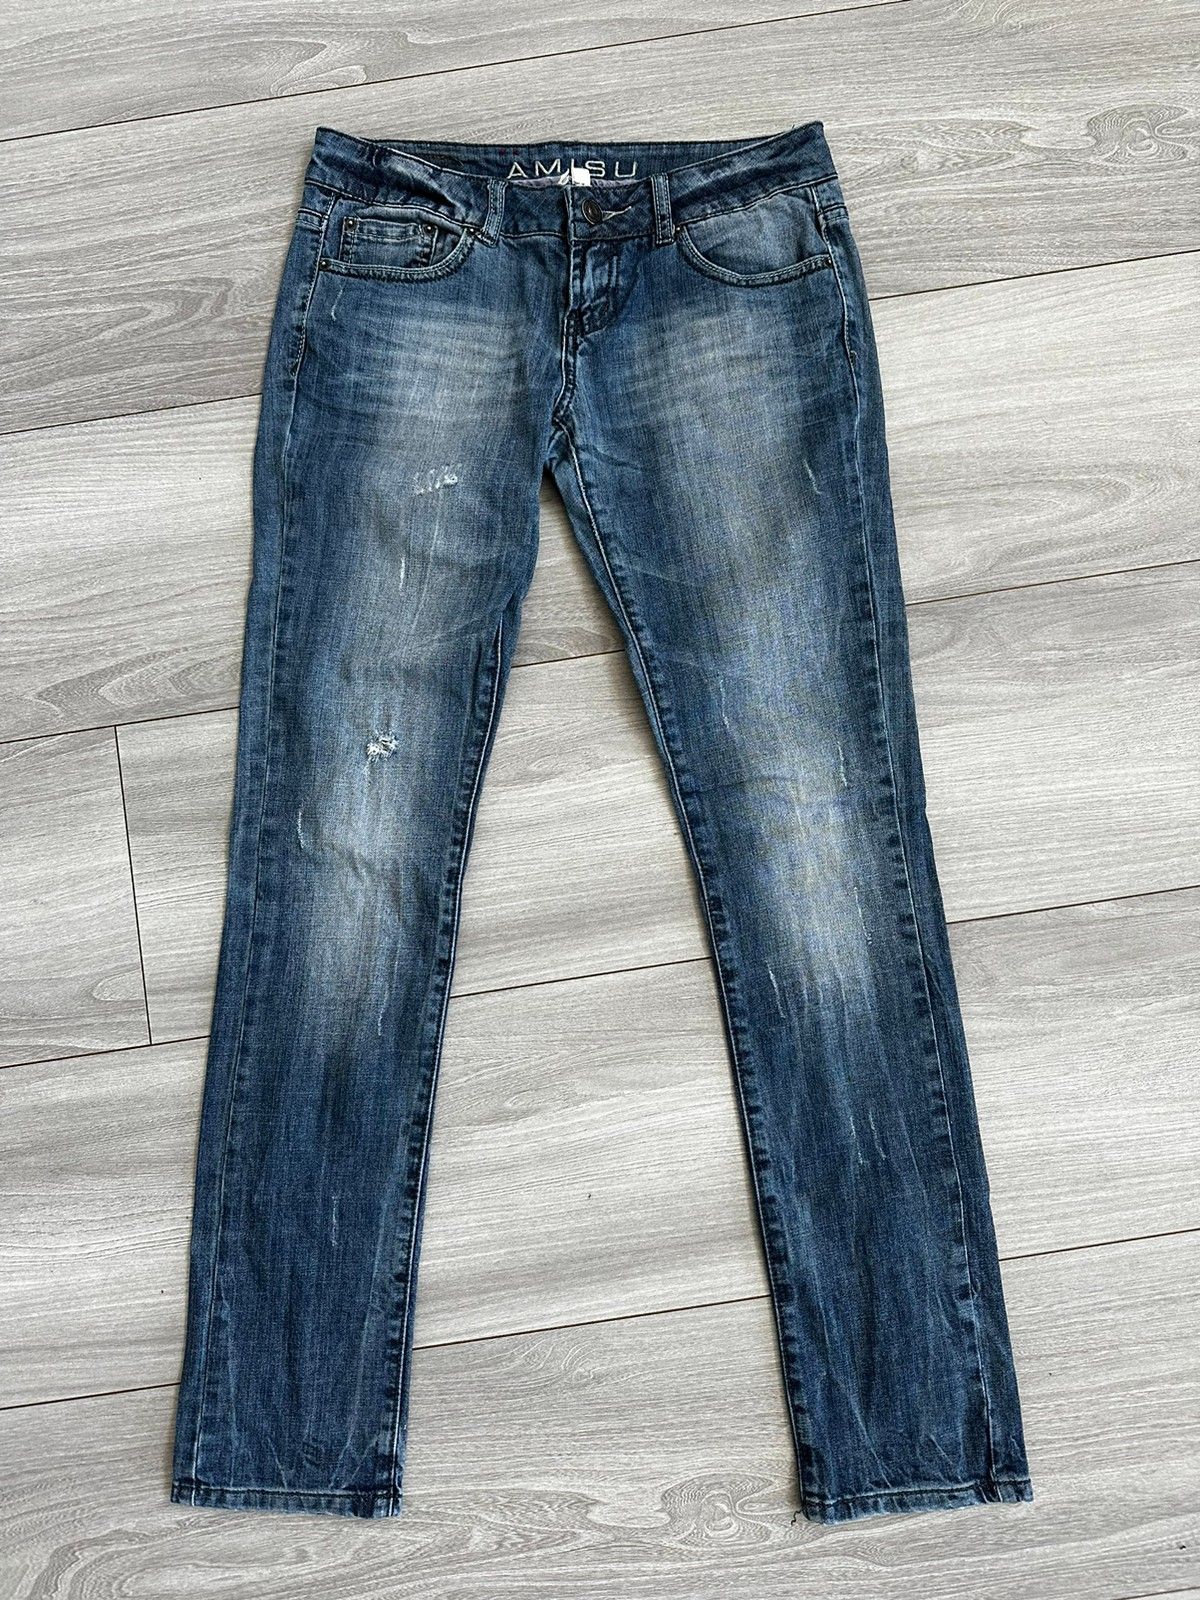 Brøl møbel Finde på Amisu jeans fra New Yorker str 27 | FINN torget